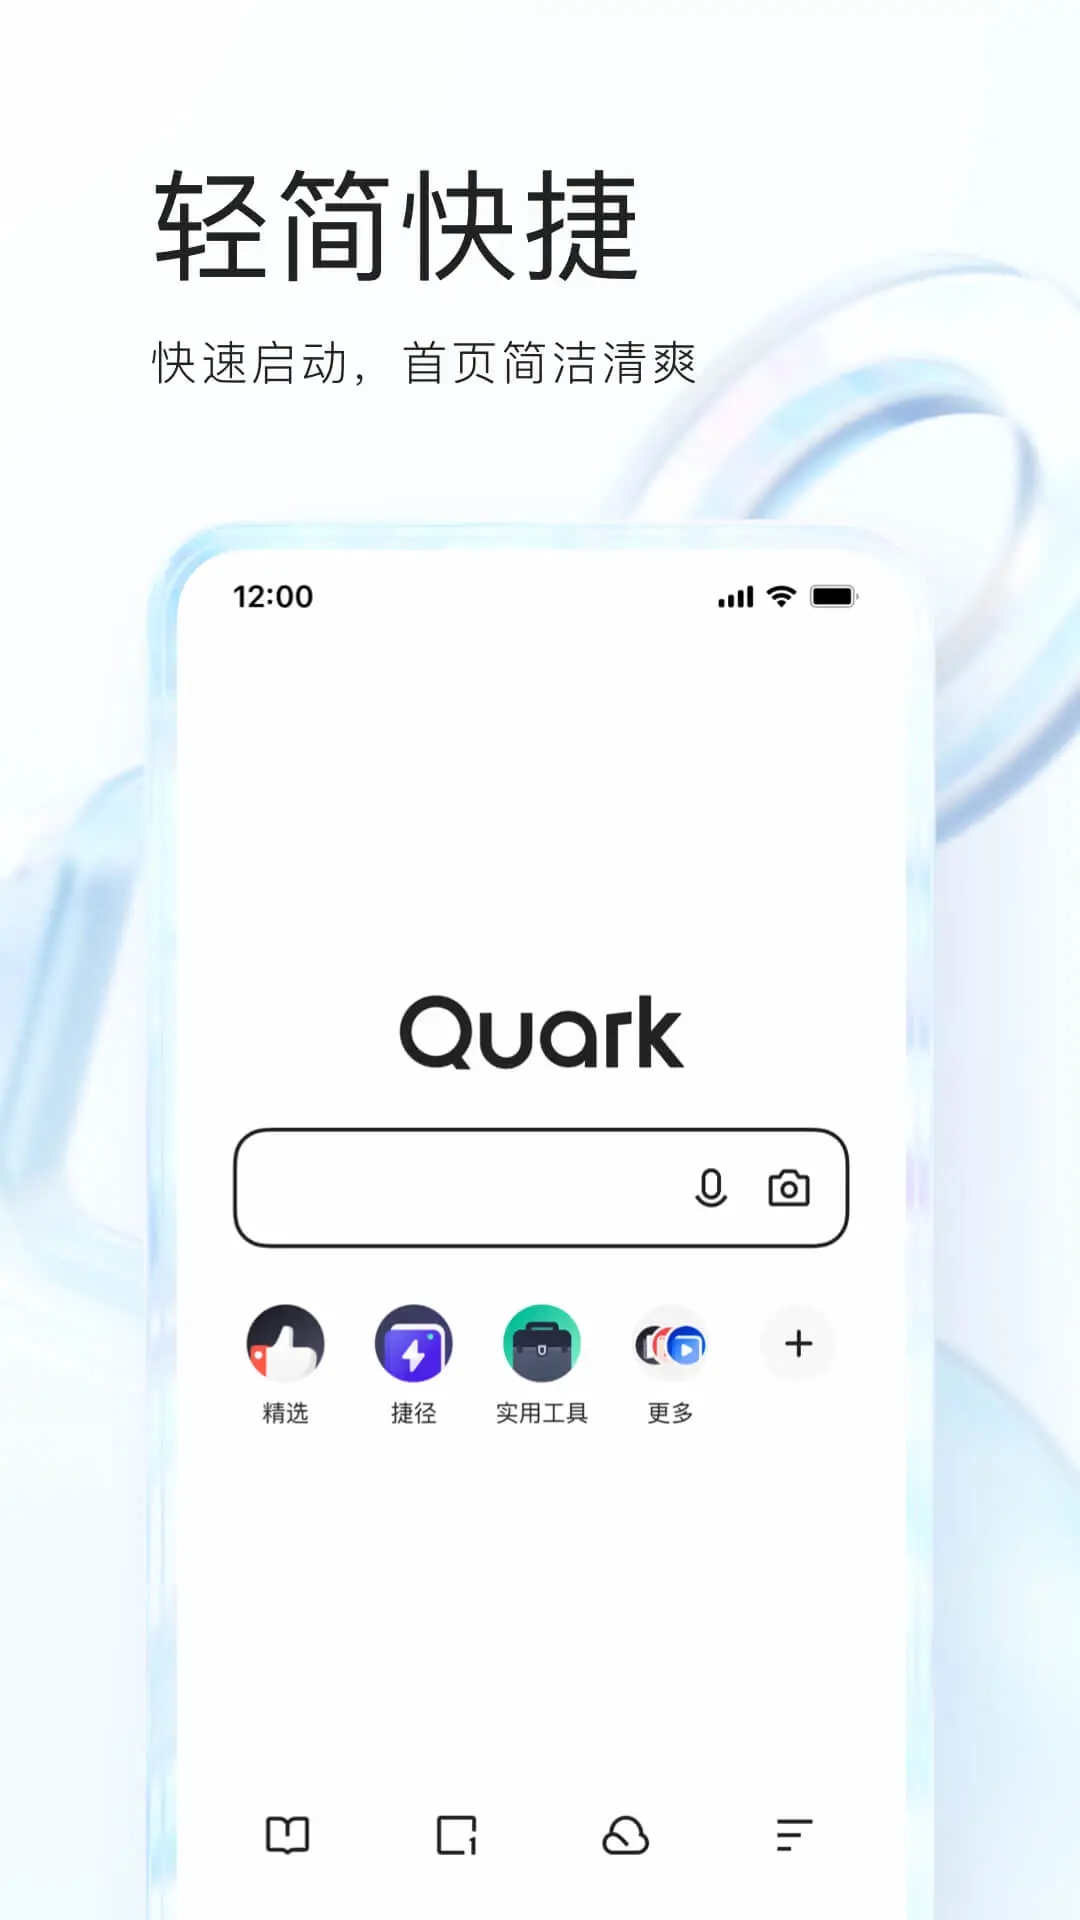 夸克浏览器app手机版